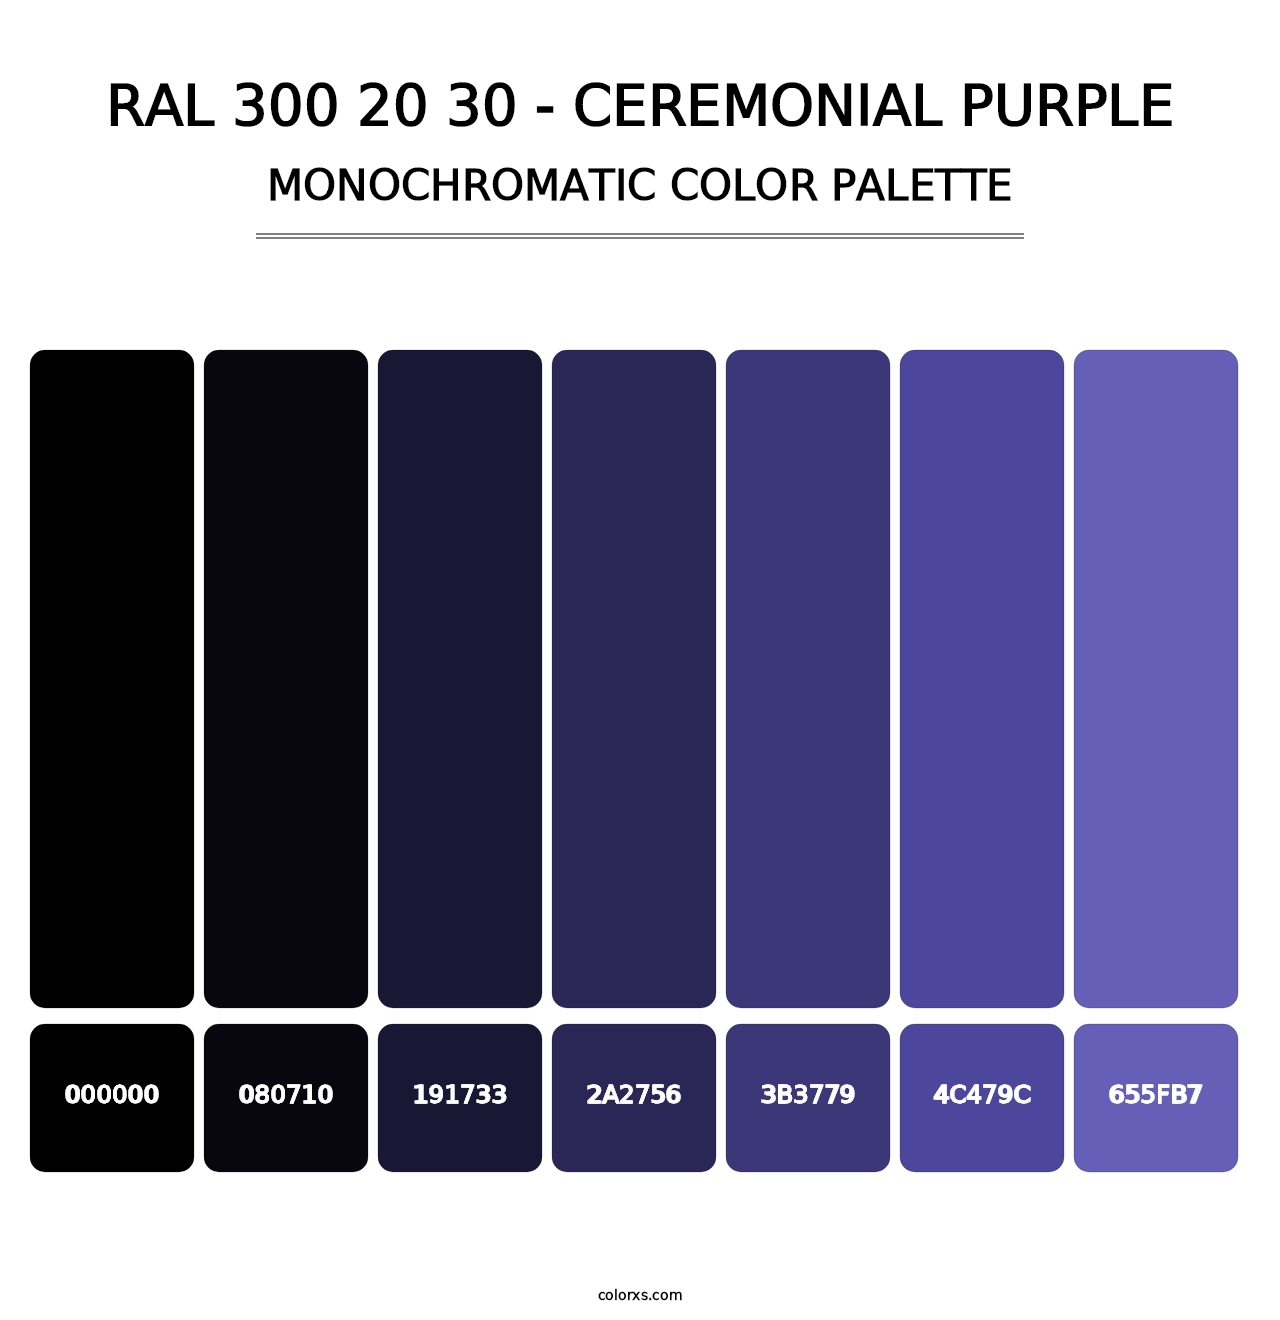 RAL 300 20 30 - Ceremonial Purple - Monochromatic Color Palette